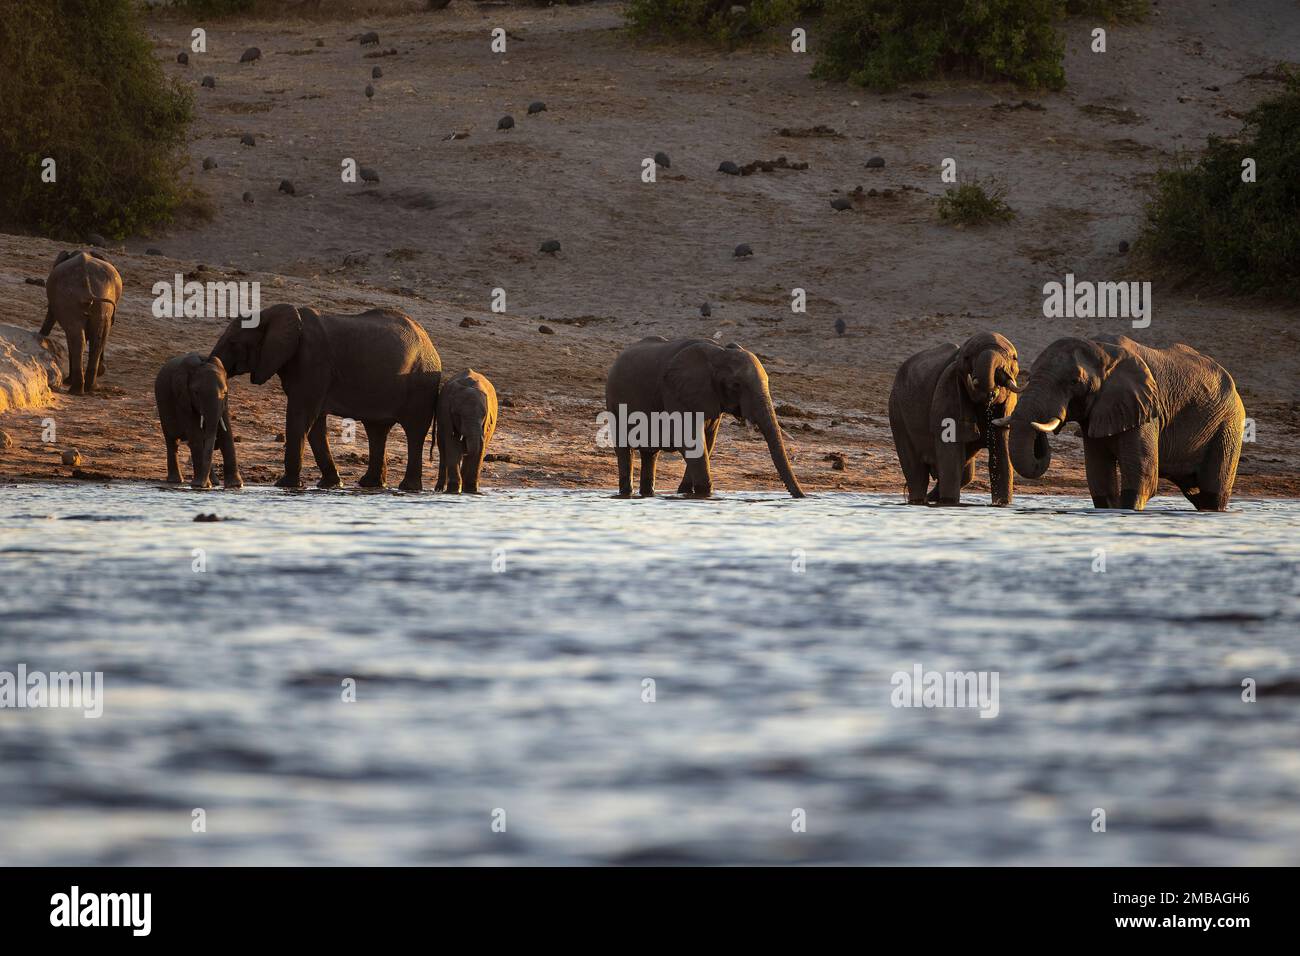 Eine Herde afrikanischer Elefanten Loxodonta africana, die in der Dämmerung am Rand des Flusses Chobe in Botsuana trinkt, mit Perlhuhn im Hintergrund Stockfoto